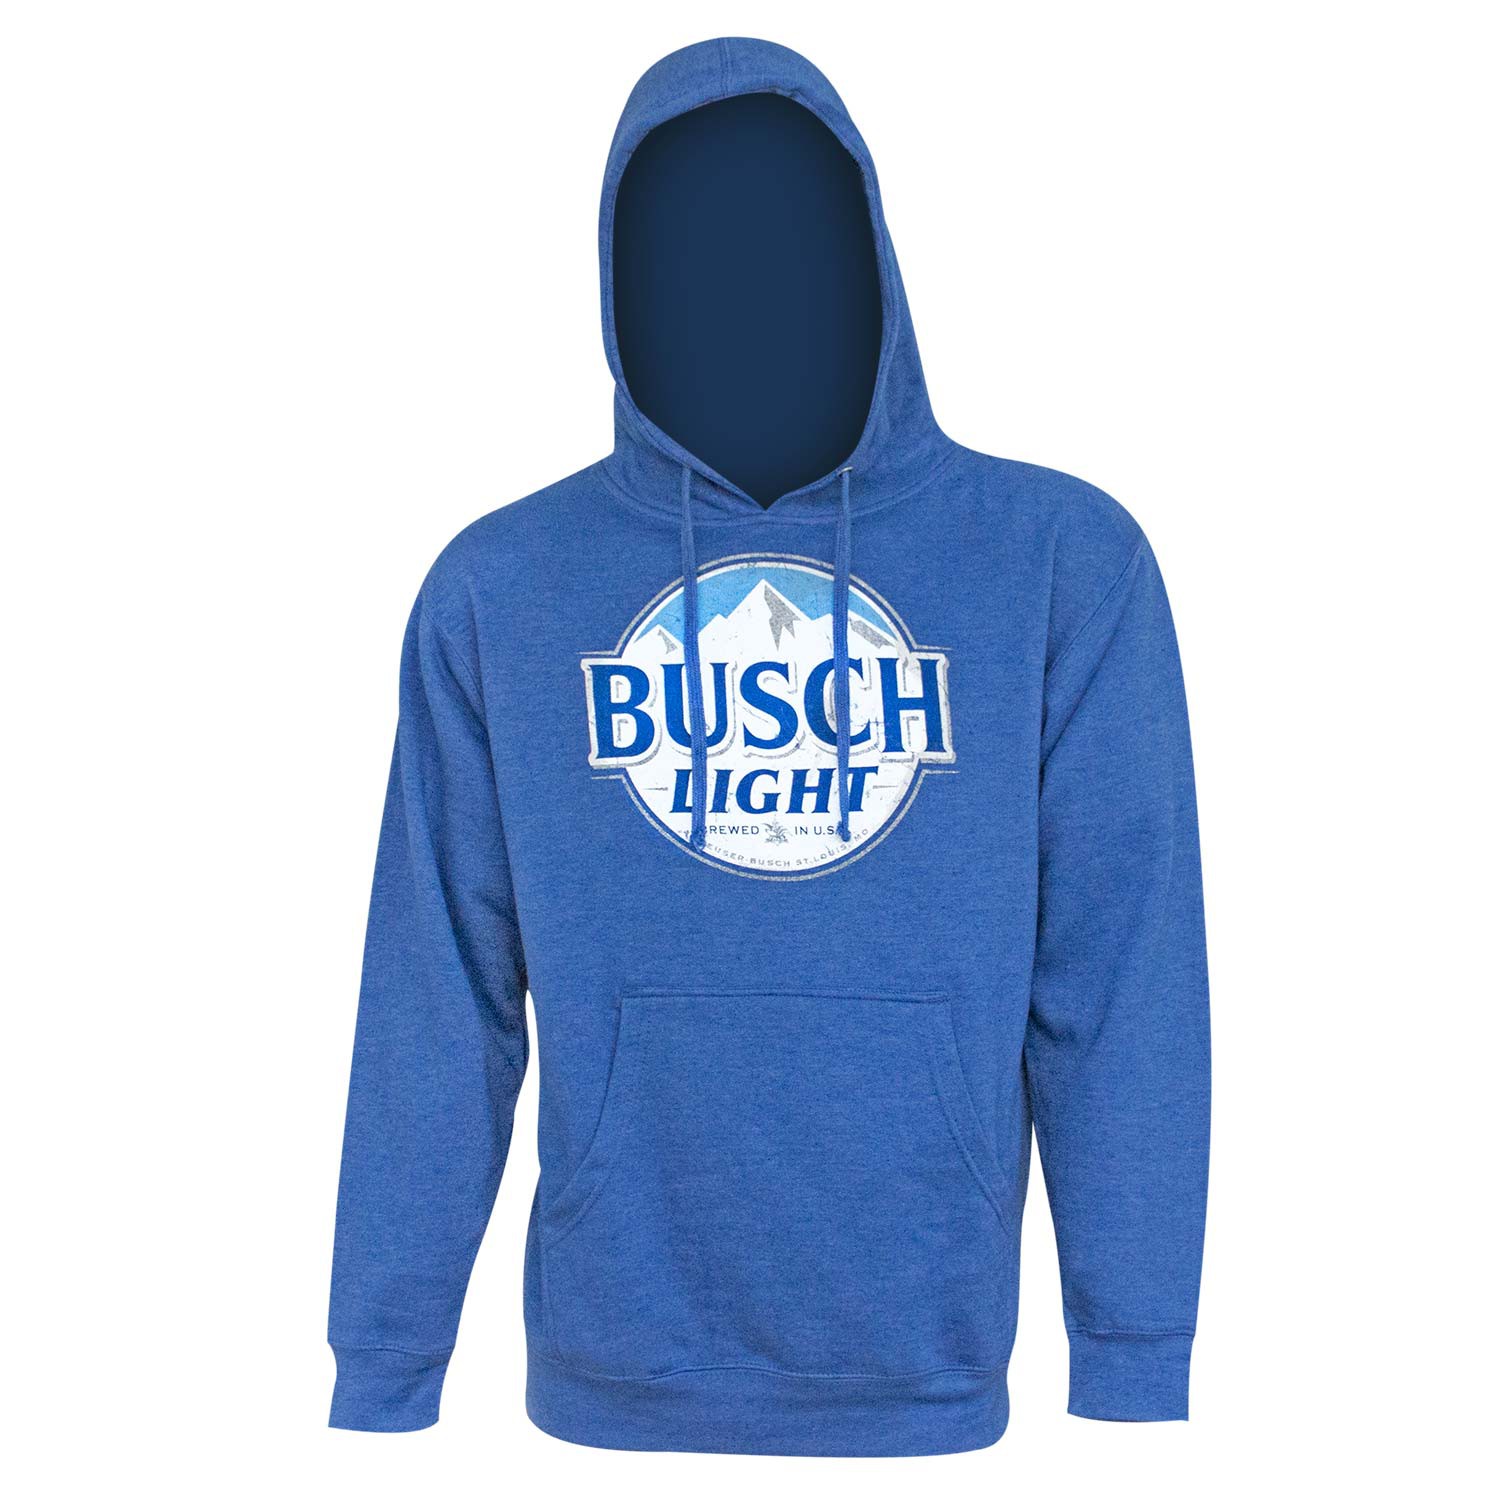 Busch Light Men's Royal Blue Hoodie